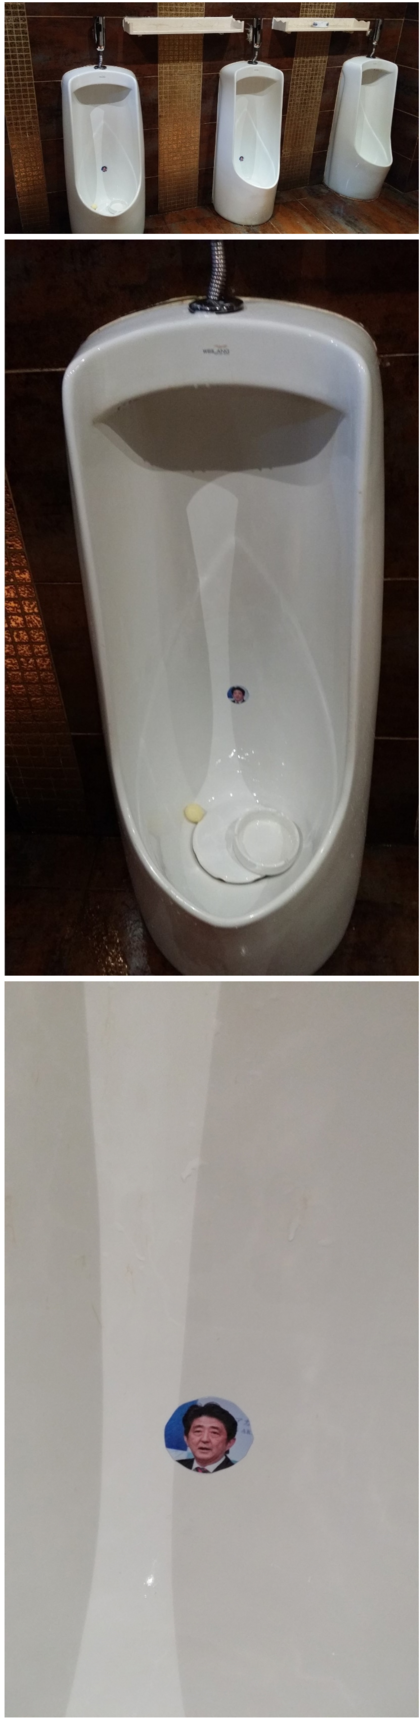 중국 화장실 근황